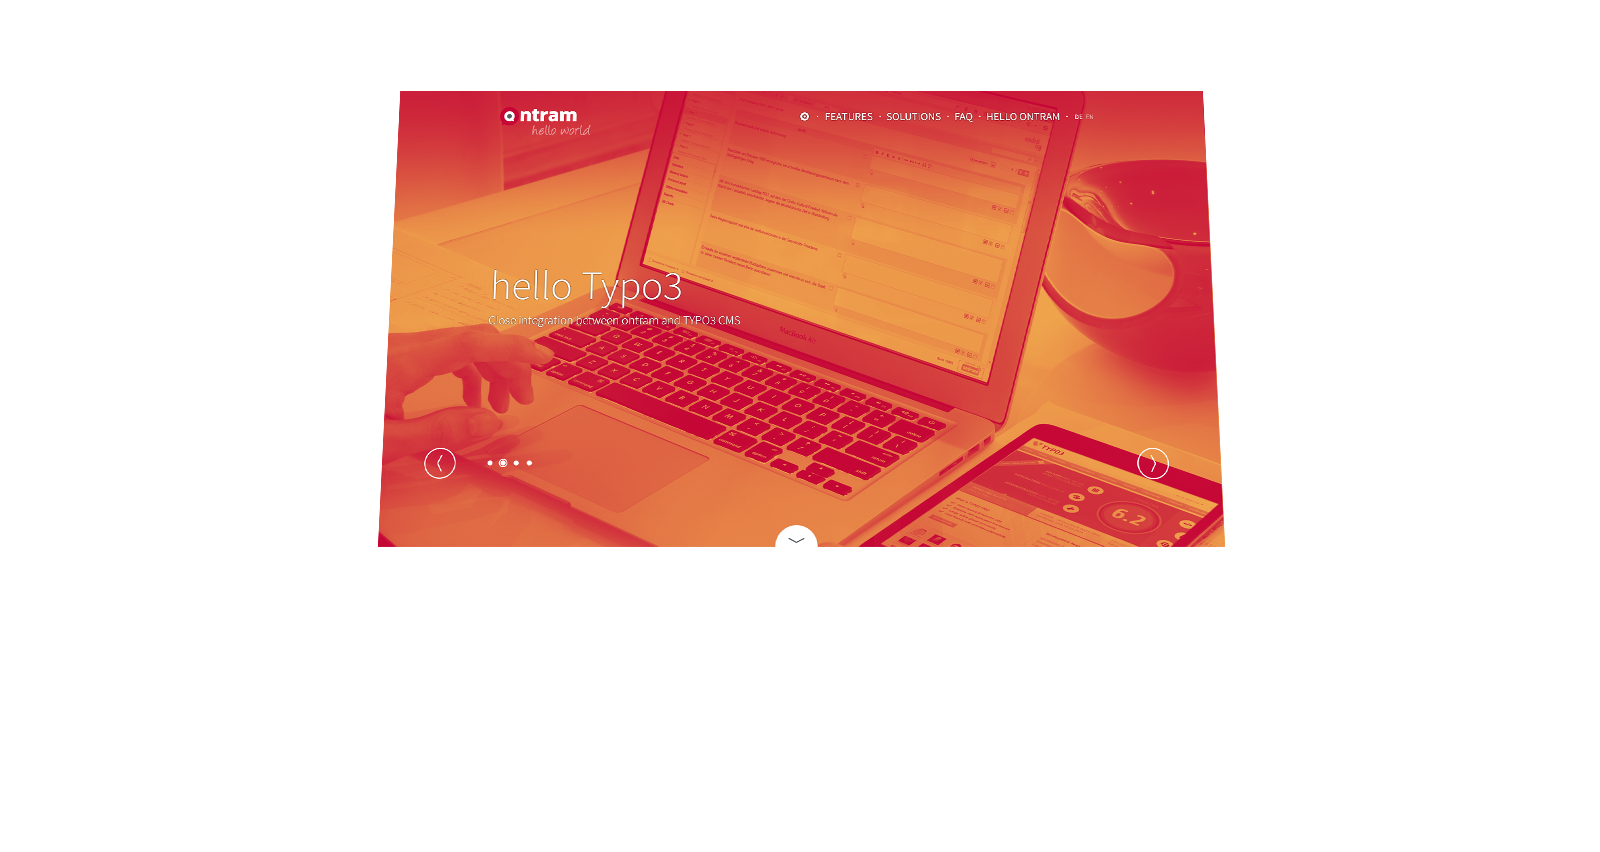 rot gefiltertes Bild eines offenen Laptops